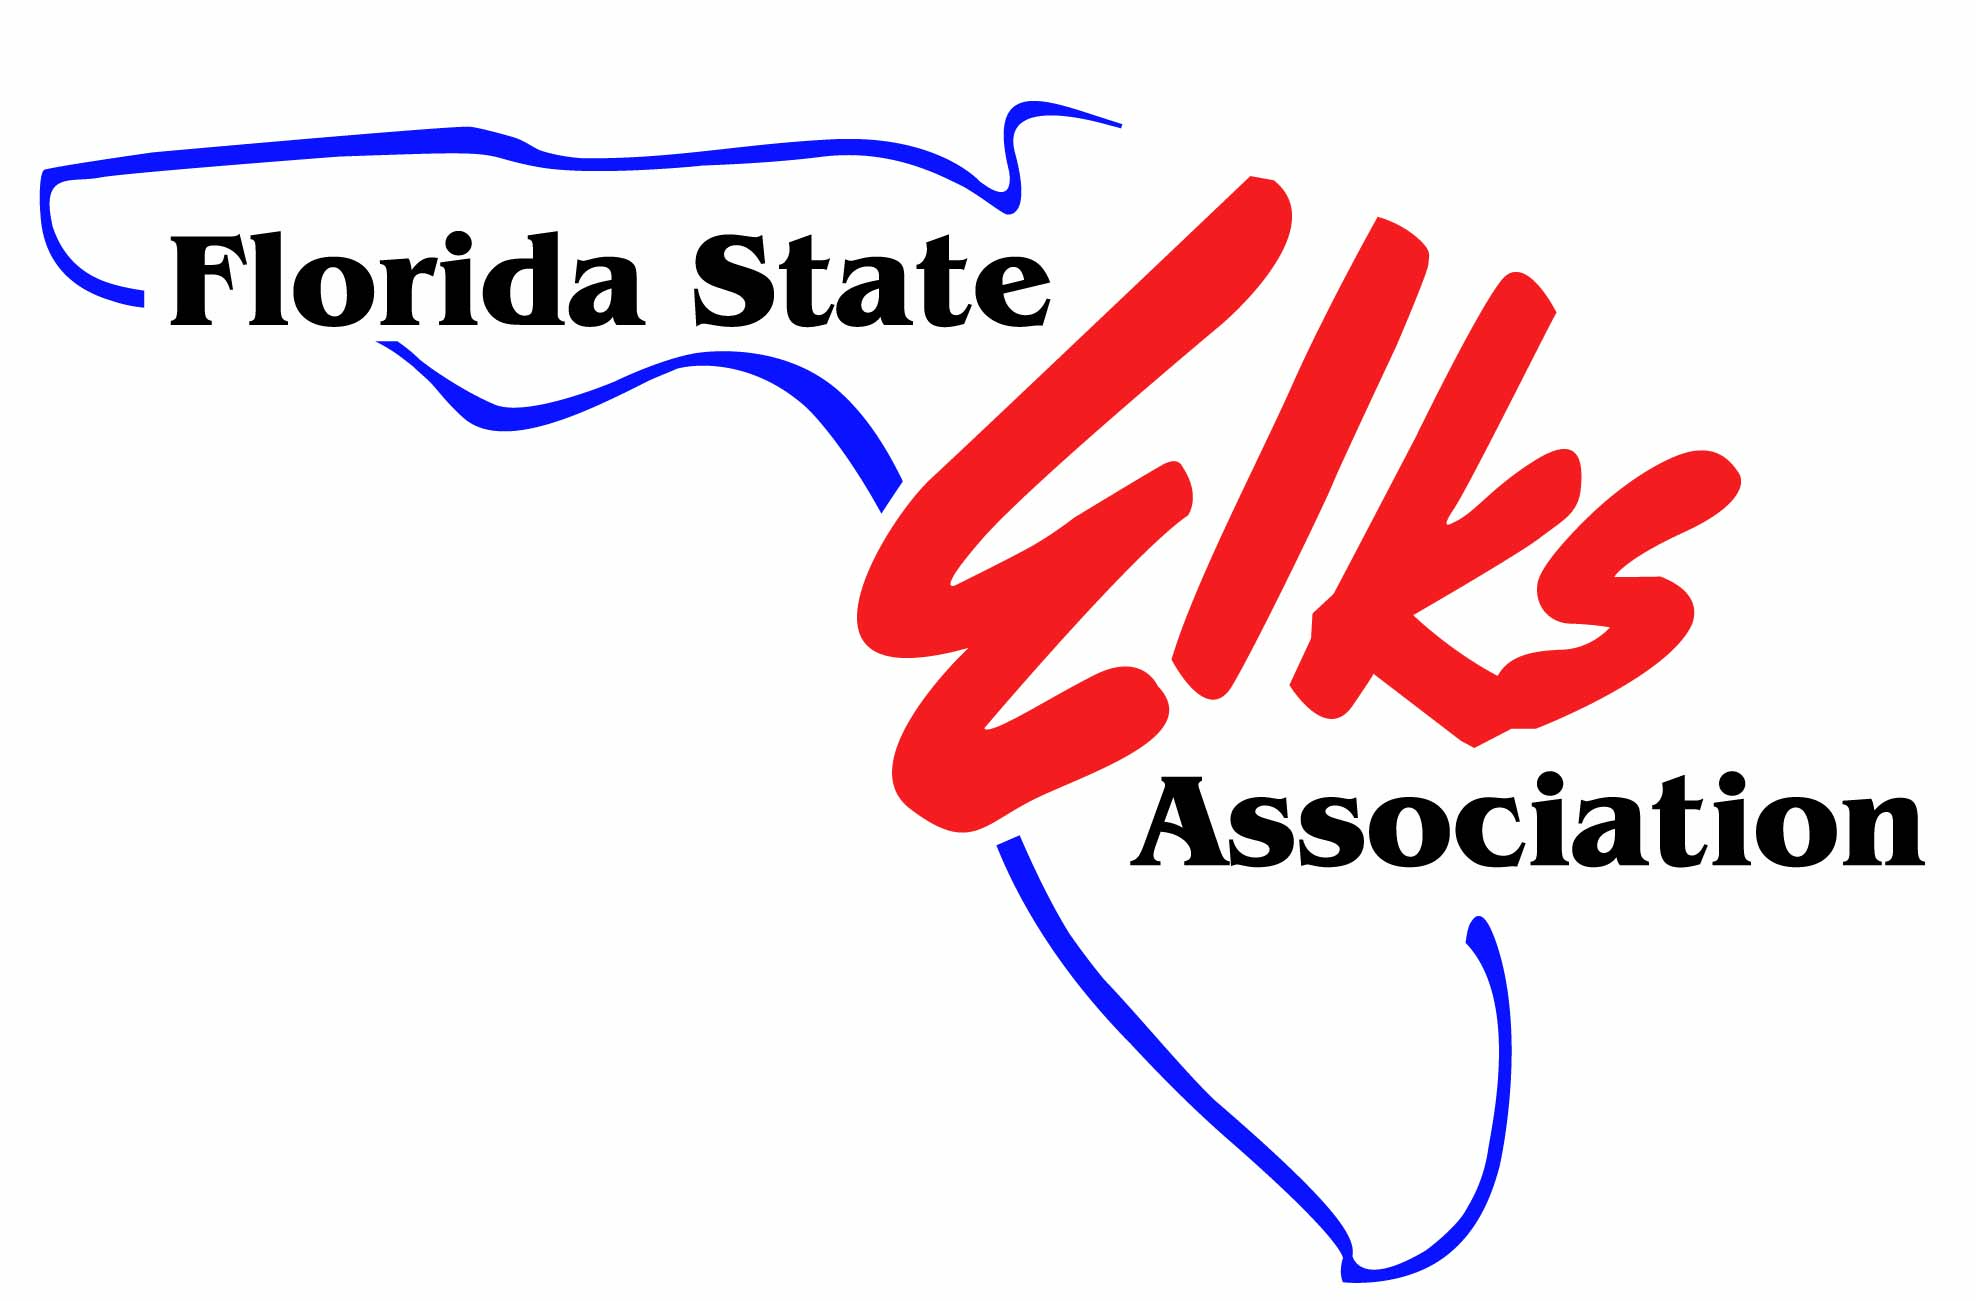 Florida State Elks Association Logo